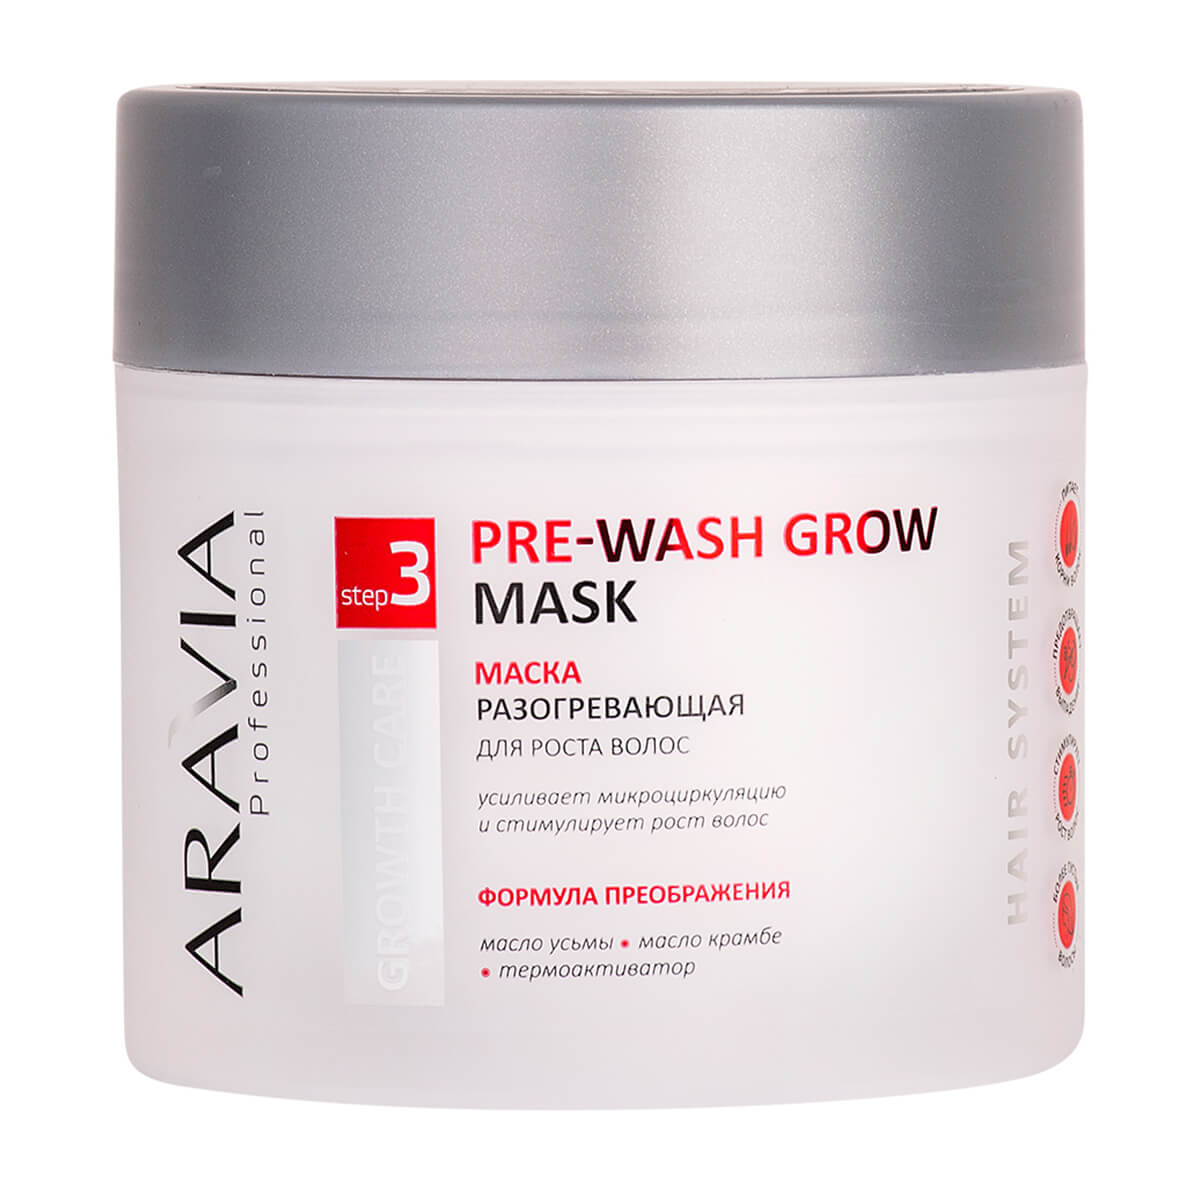 Маска разогревающая для роста волос Pre-wash Grow Mask, 300 мл, Aravia - фото 1